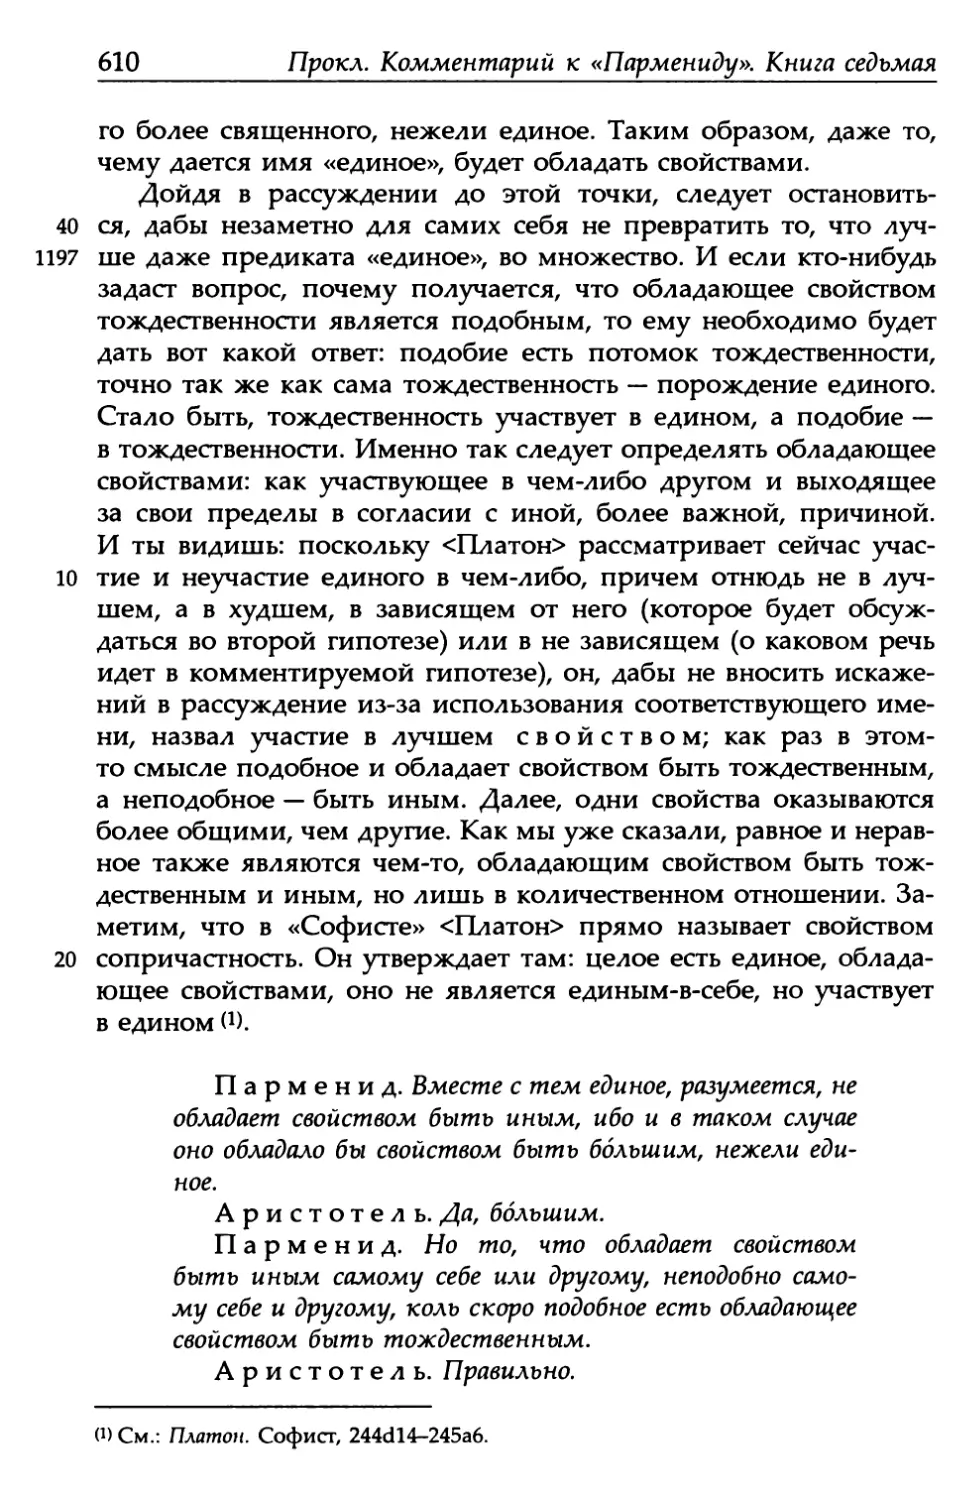 «Парменид», 140а6-b3